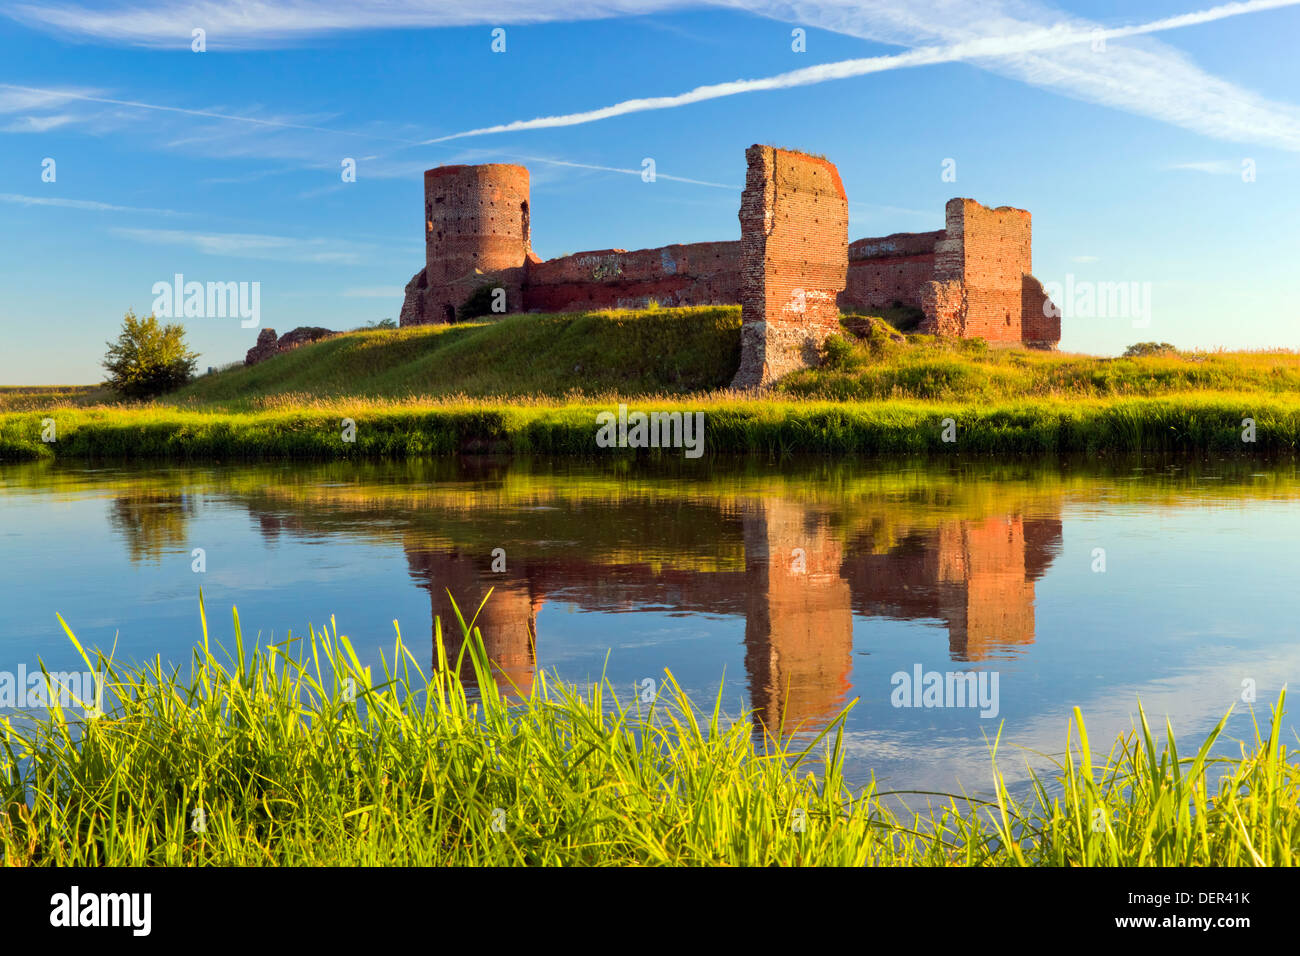 Kolo château sur la rivière Warta, la Pologne, l'Europe. Banque D'Images